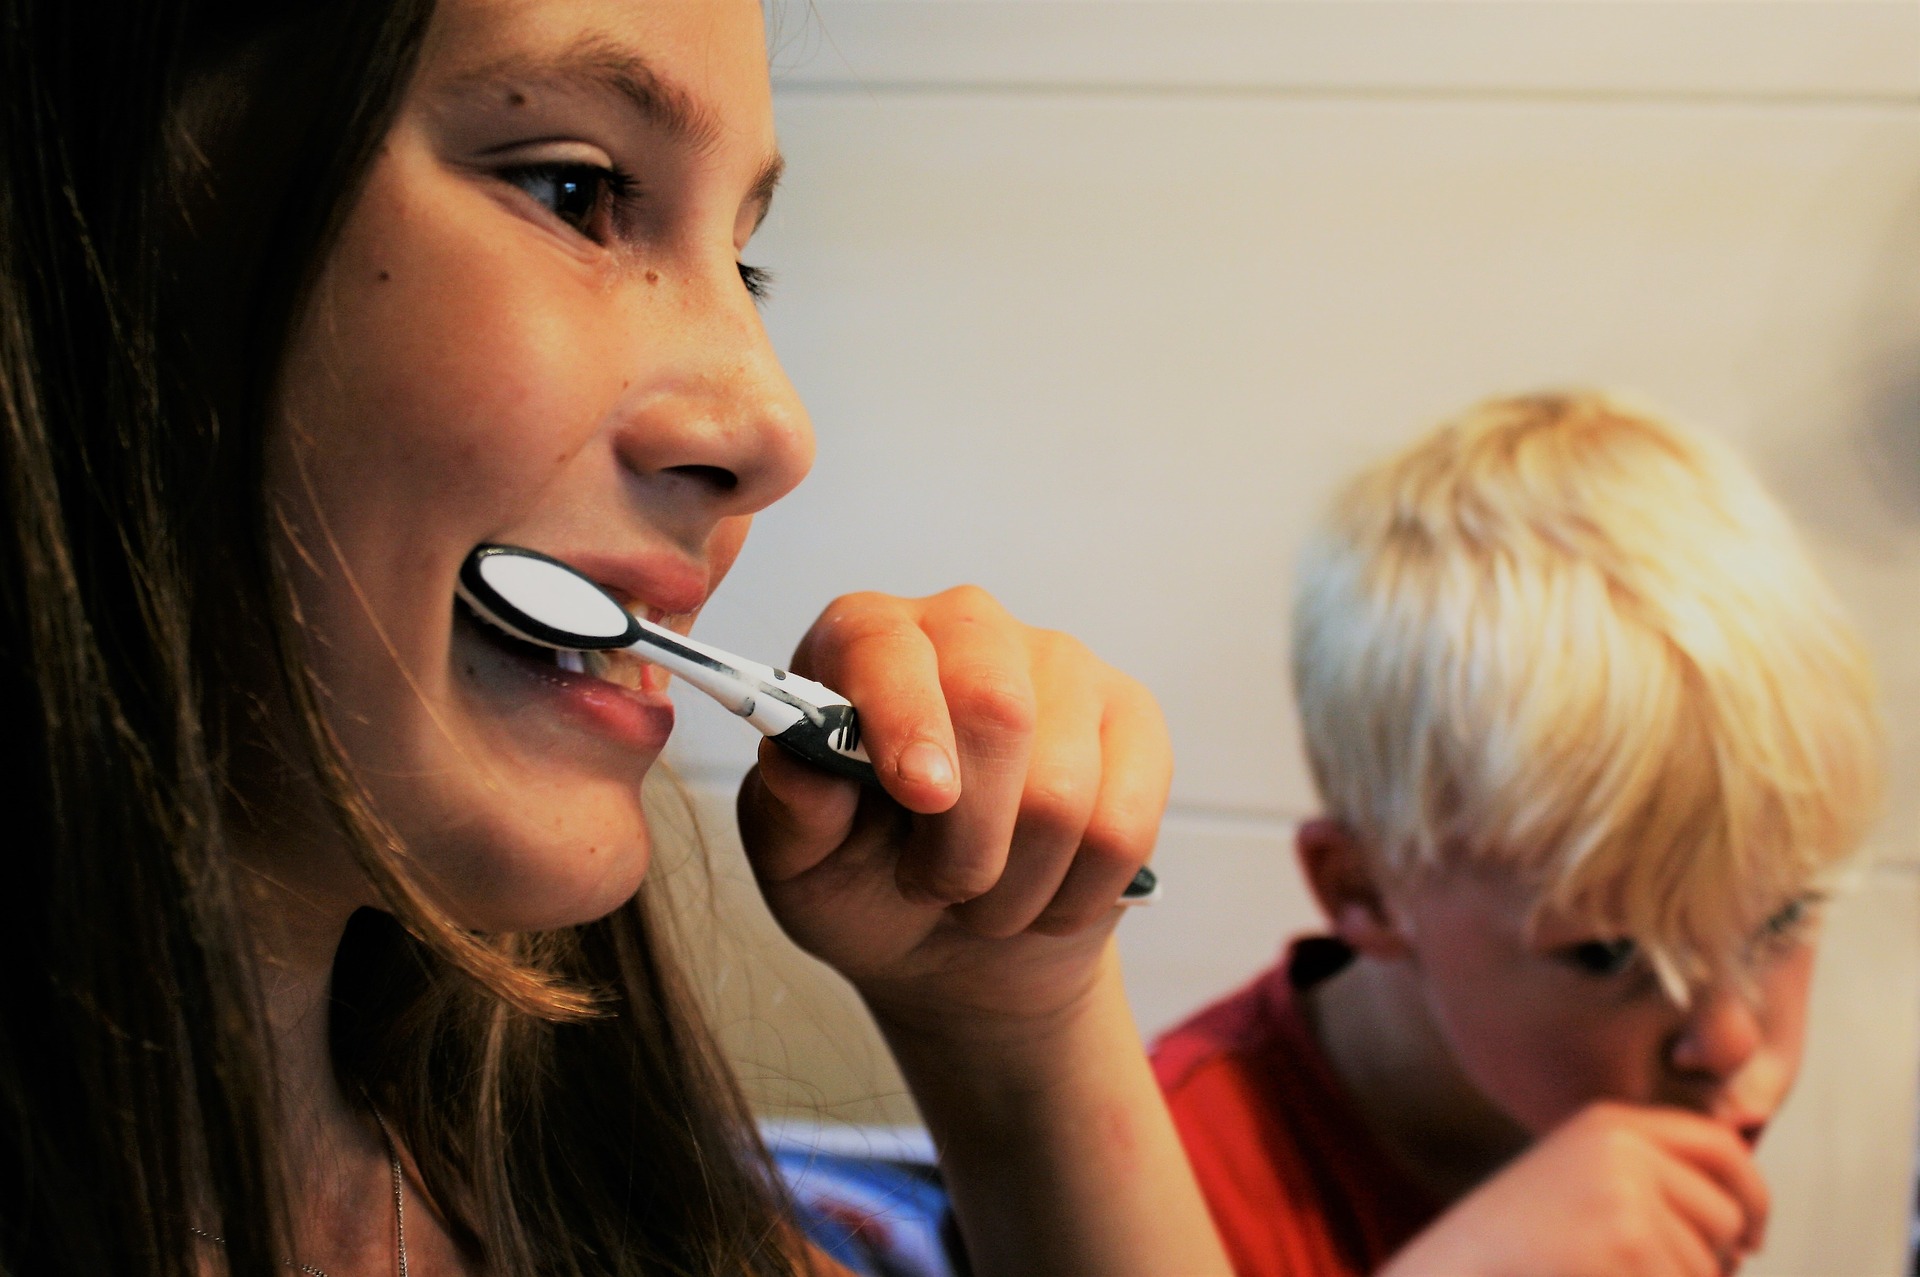 משקיעים בצחצוח: מה יקרה לכם אם לא תצחצחו שיניים?